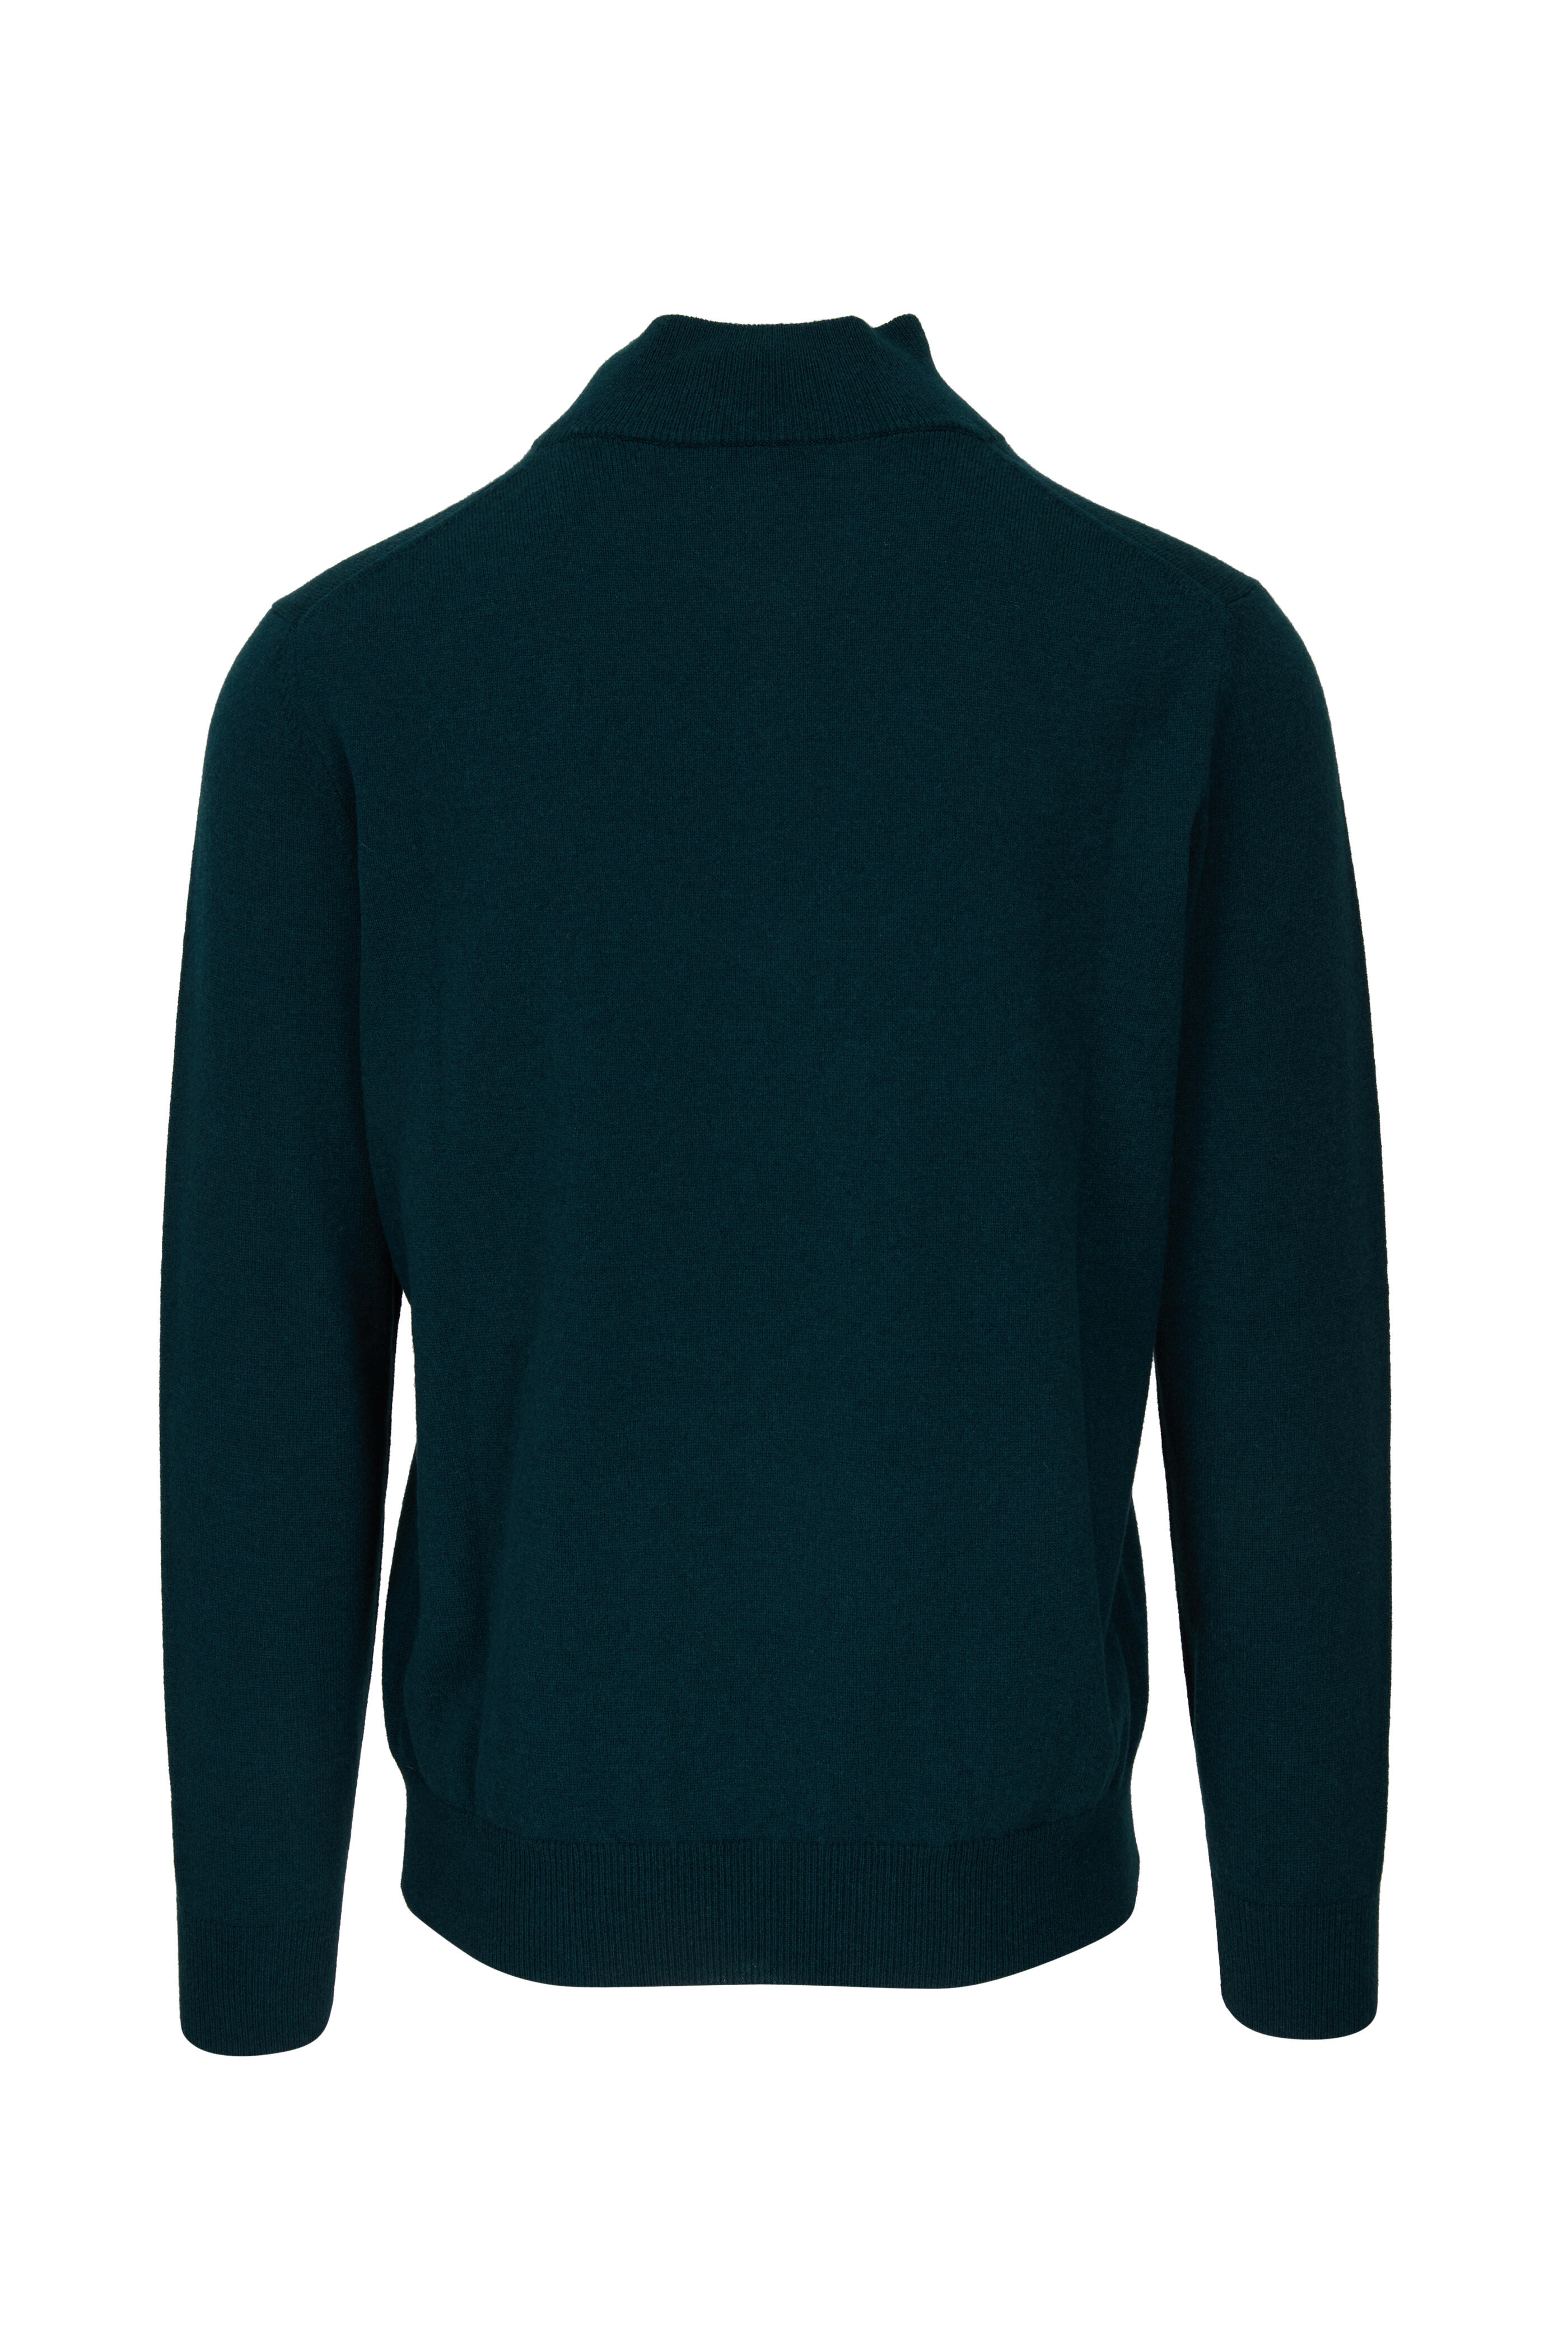 Fratelli Piacenza - Green Cashmere Quarter Zip Pullover